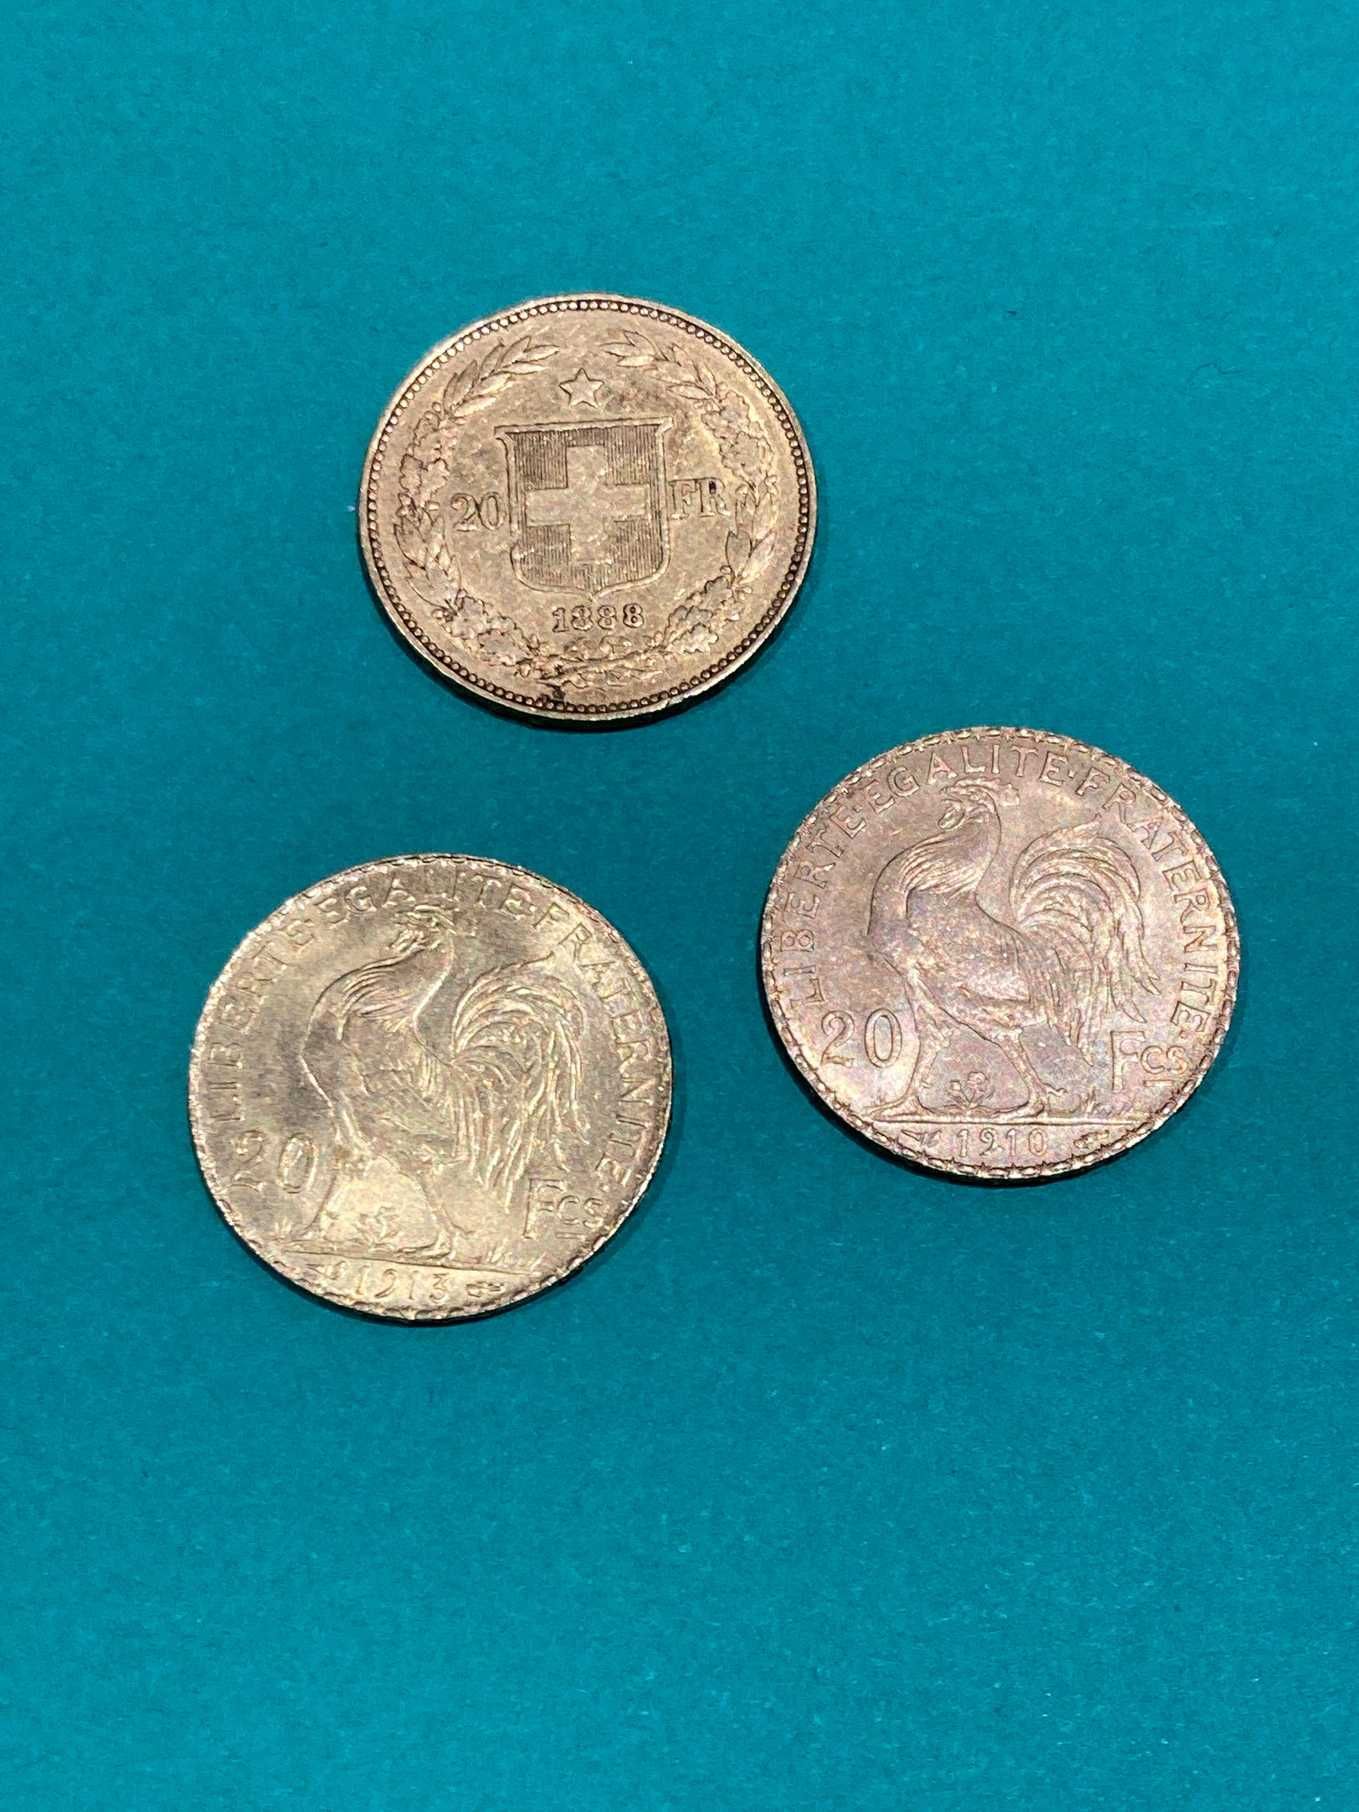 Null Lot von 3 Münzen 20fr Gold (1910-1913 und 1883)